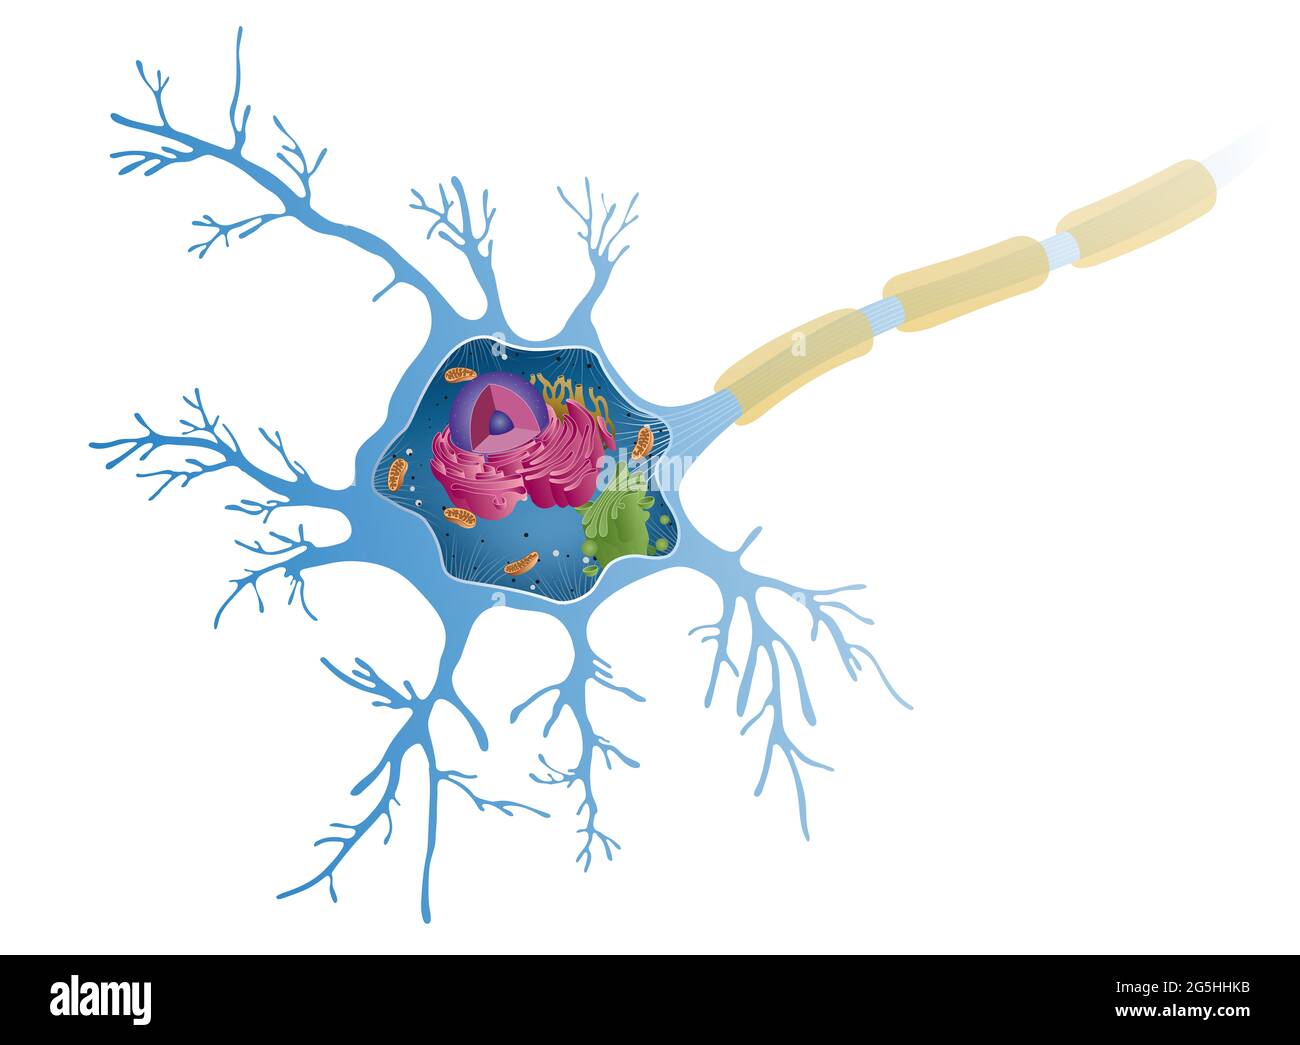 Anatomie eines multipolaren Neurons. Nervenzellen, auch Neuronen genannt, sind die aktive Komponente des Nervensystems Stockfoto